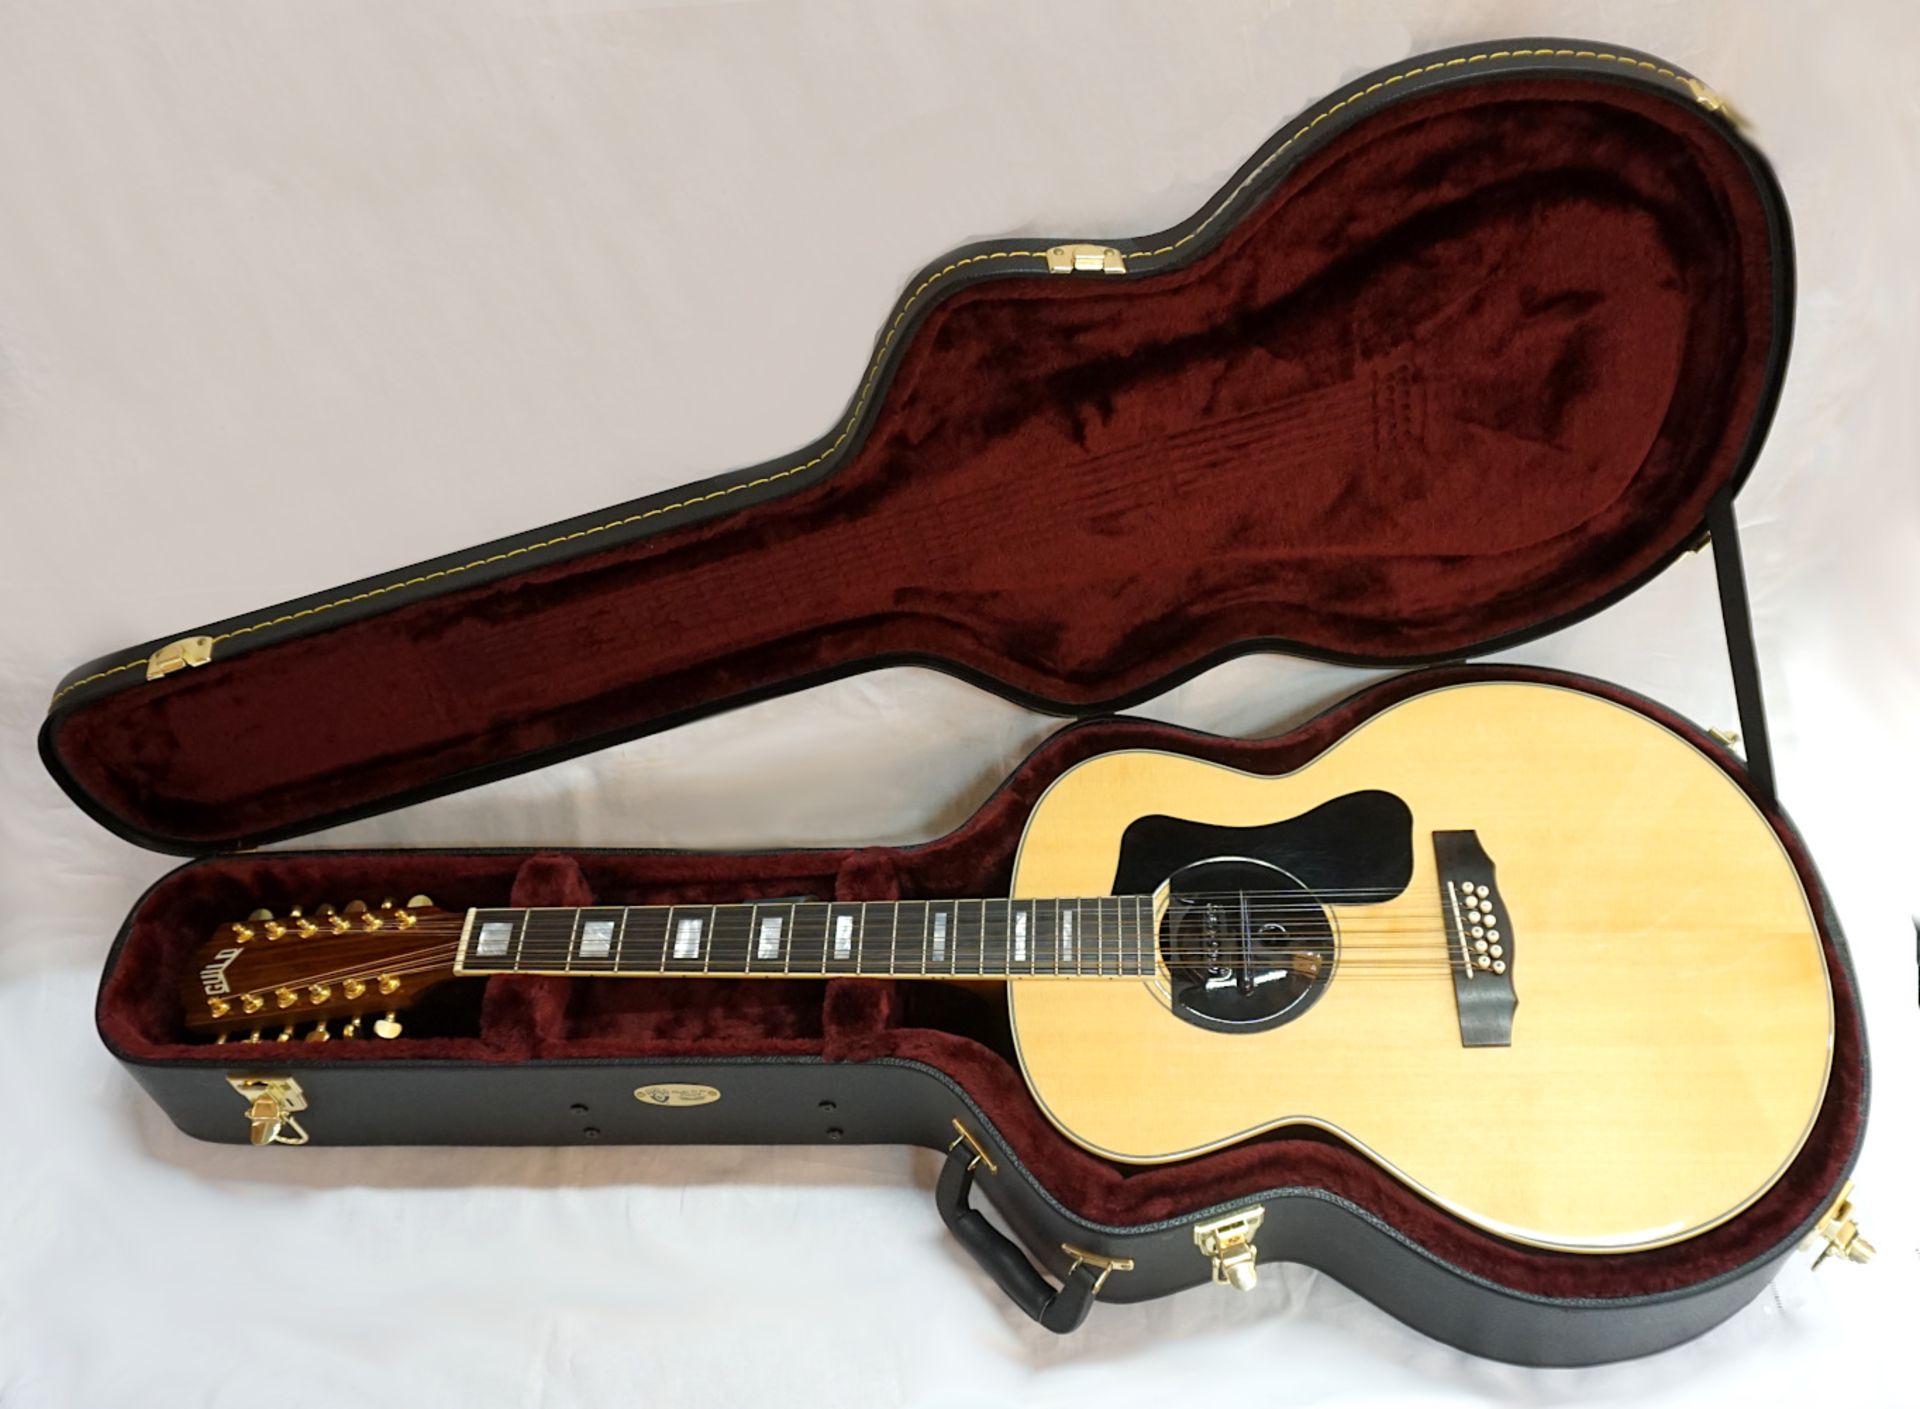 1 Akustik-Gitarre GUILD "F-1512NAT", China Seriennummer: GAD-54054, schwarz/braun, mit